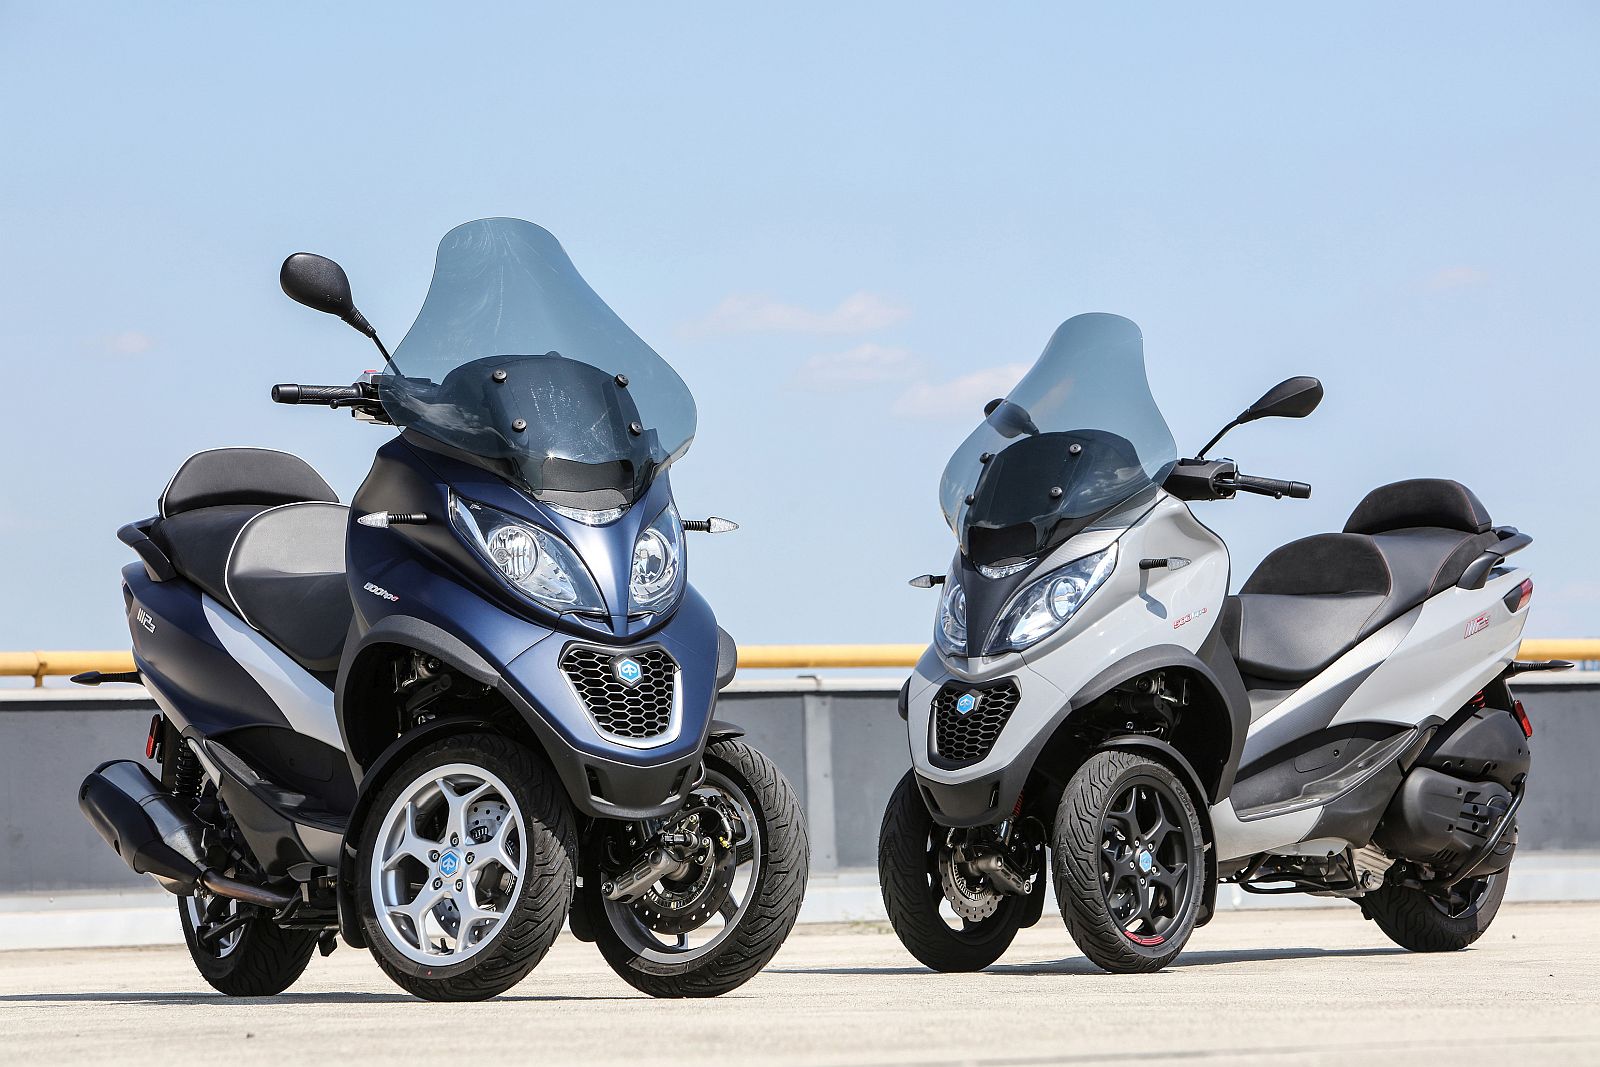 Mp3 Rijden Met Autorijbewijs 2021 Deze Motorscooters Mag Je Met Een Autorijbewijs Rijden